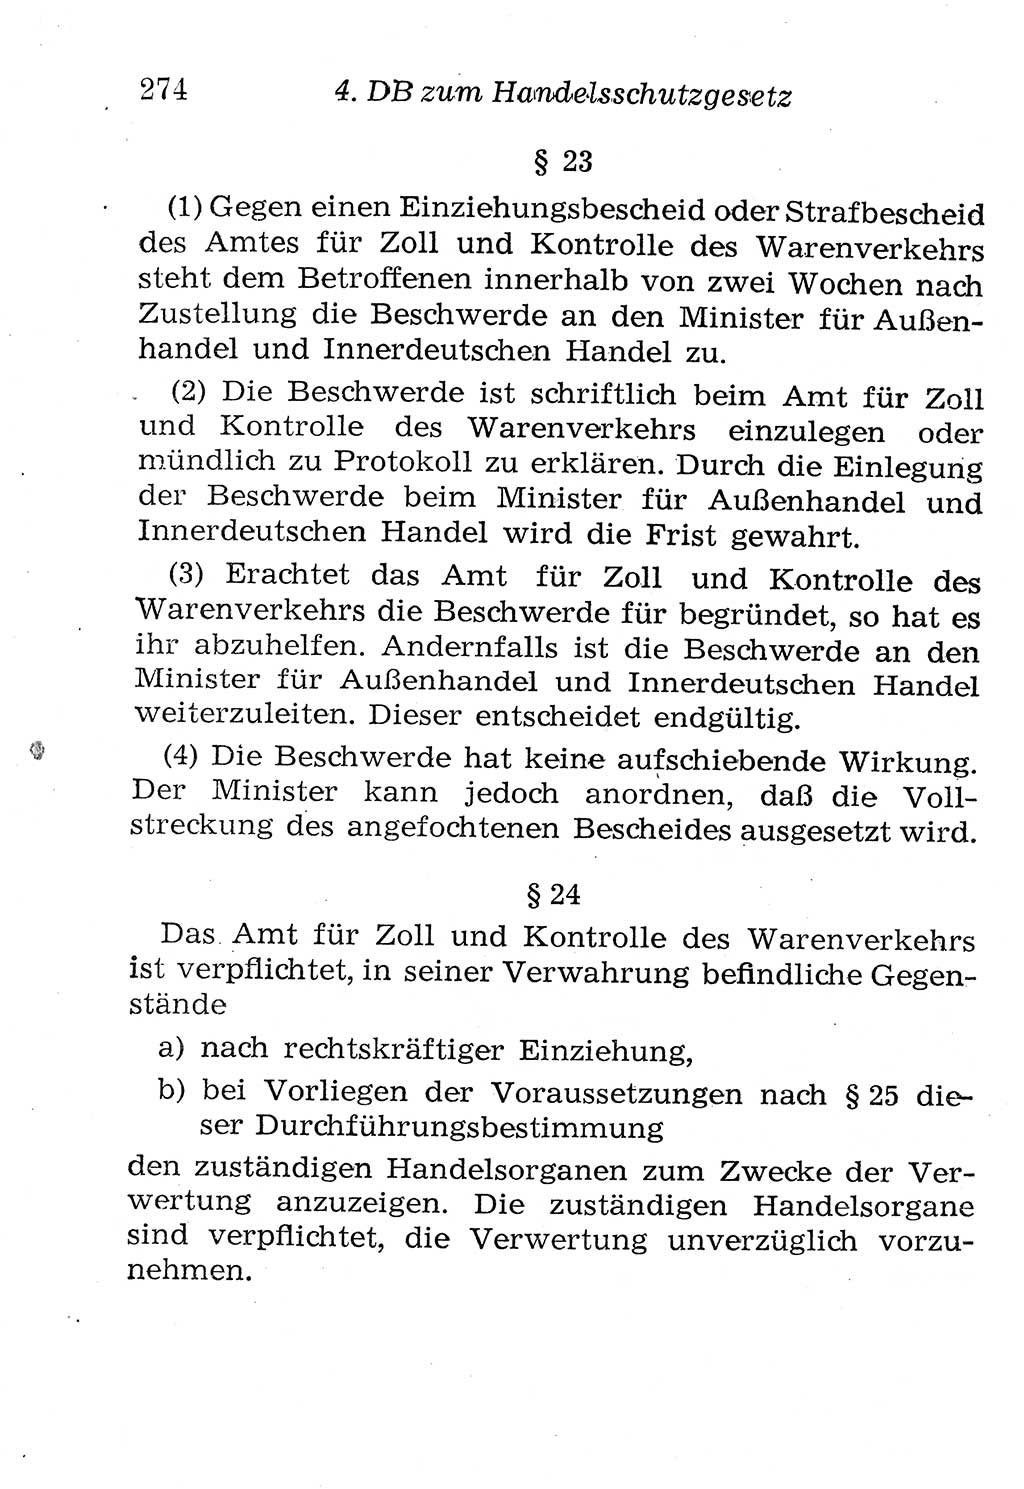 Strafgesetzbuch (StGB) und andere Strafgesetze [Deutsche Demokratische Republik (DDR)] 1958, Seite 274 (StGB Strafges. DDR 1958, S. 274)